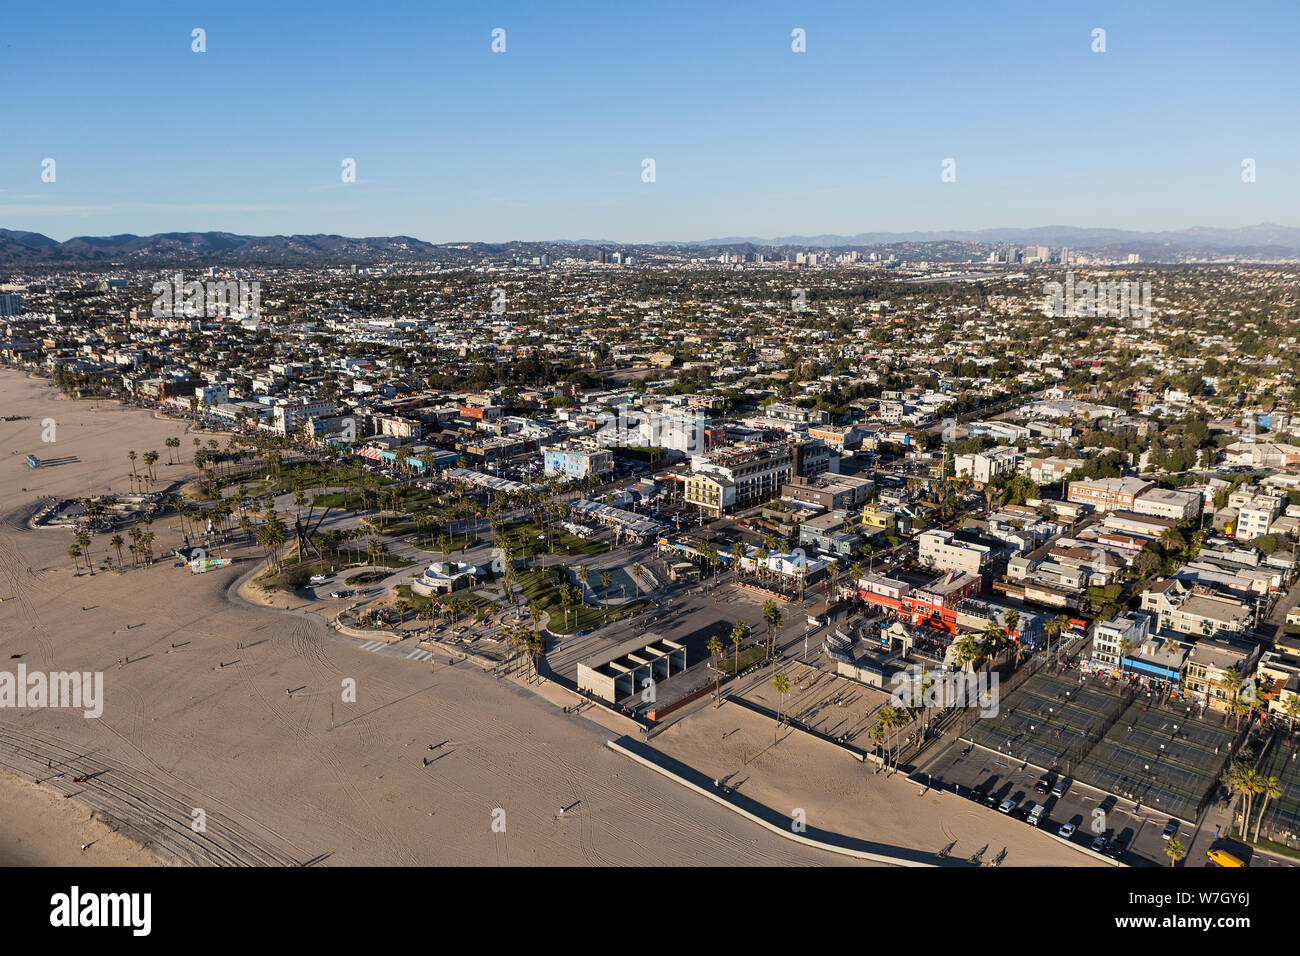 Los Angeles, California, Stati Uniti d'America - 17 dicembre 2016: Pomeriggio Vista aerea della Spiaggia Venice strutture ricreative nella California Meridionale. Foto Stock